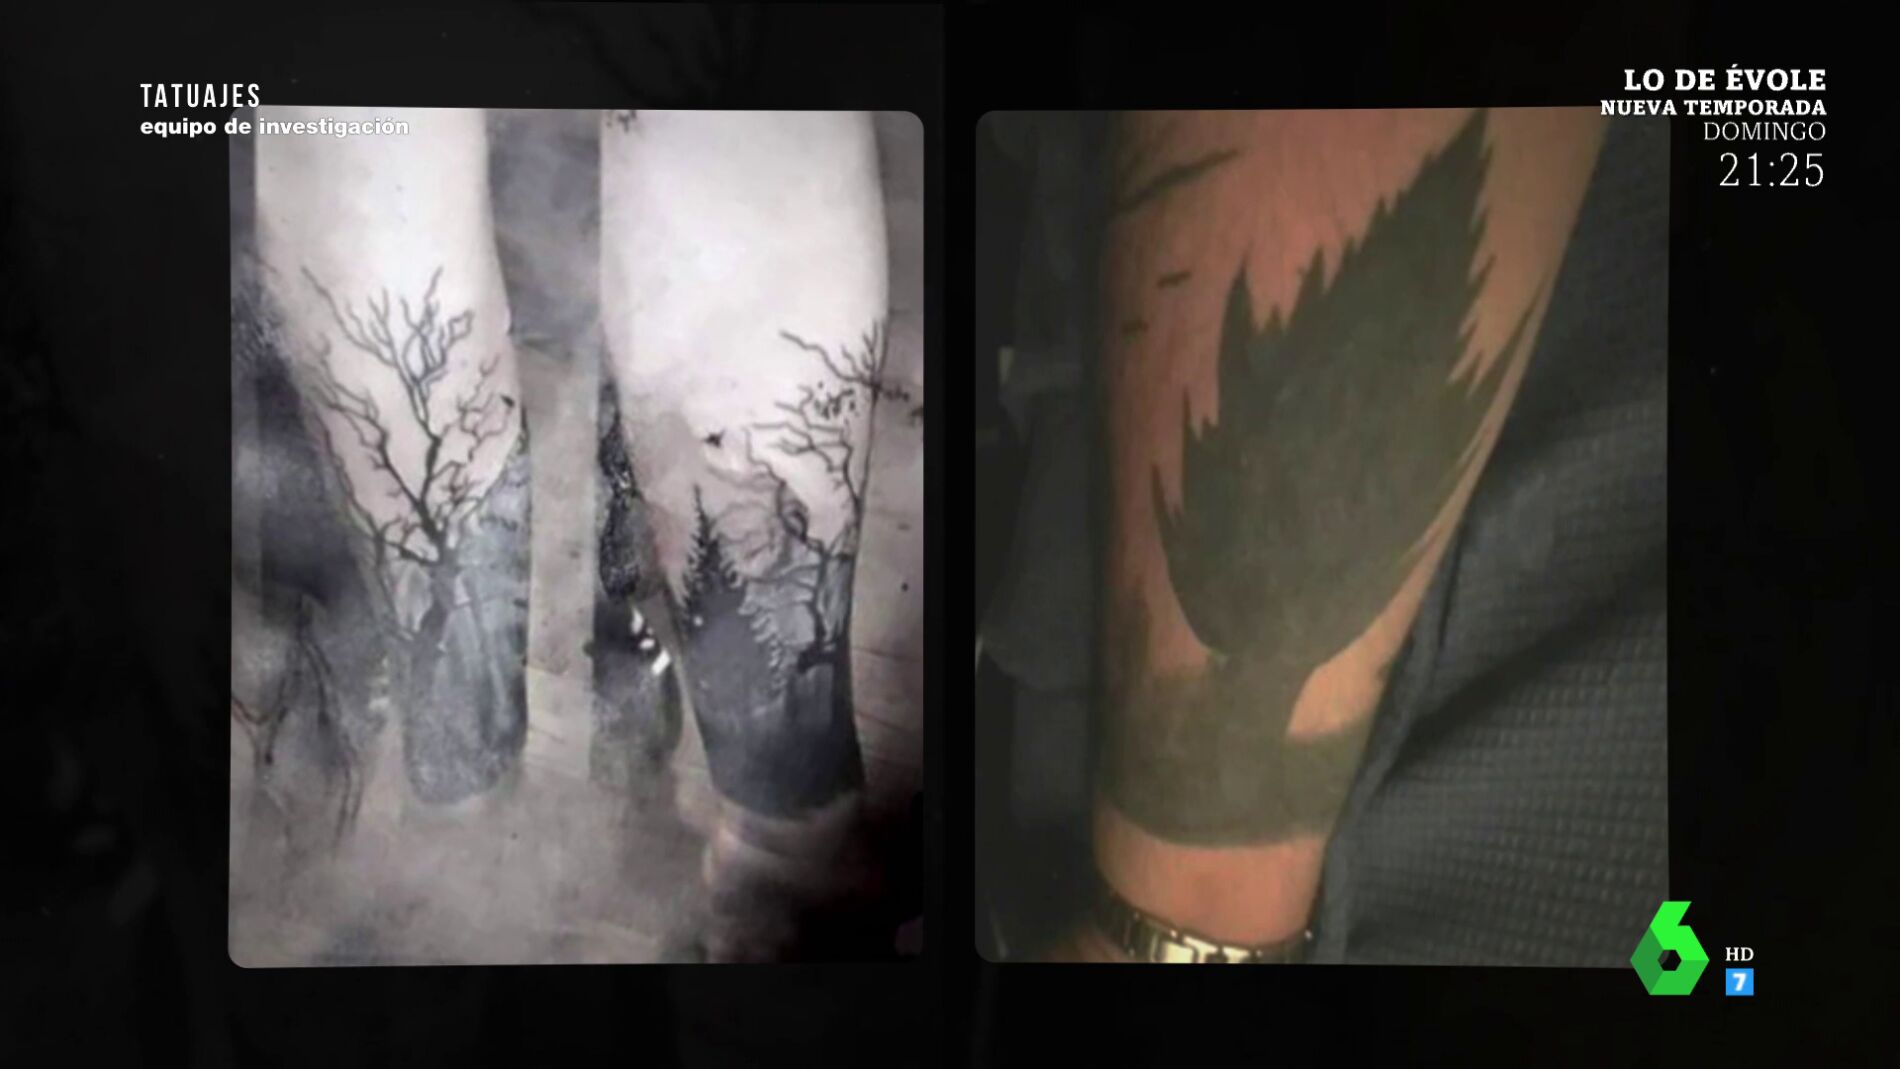 Carlos becks tattoo